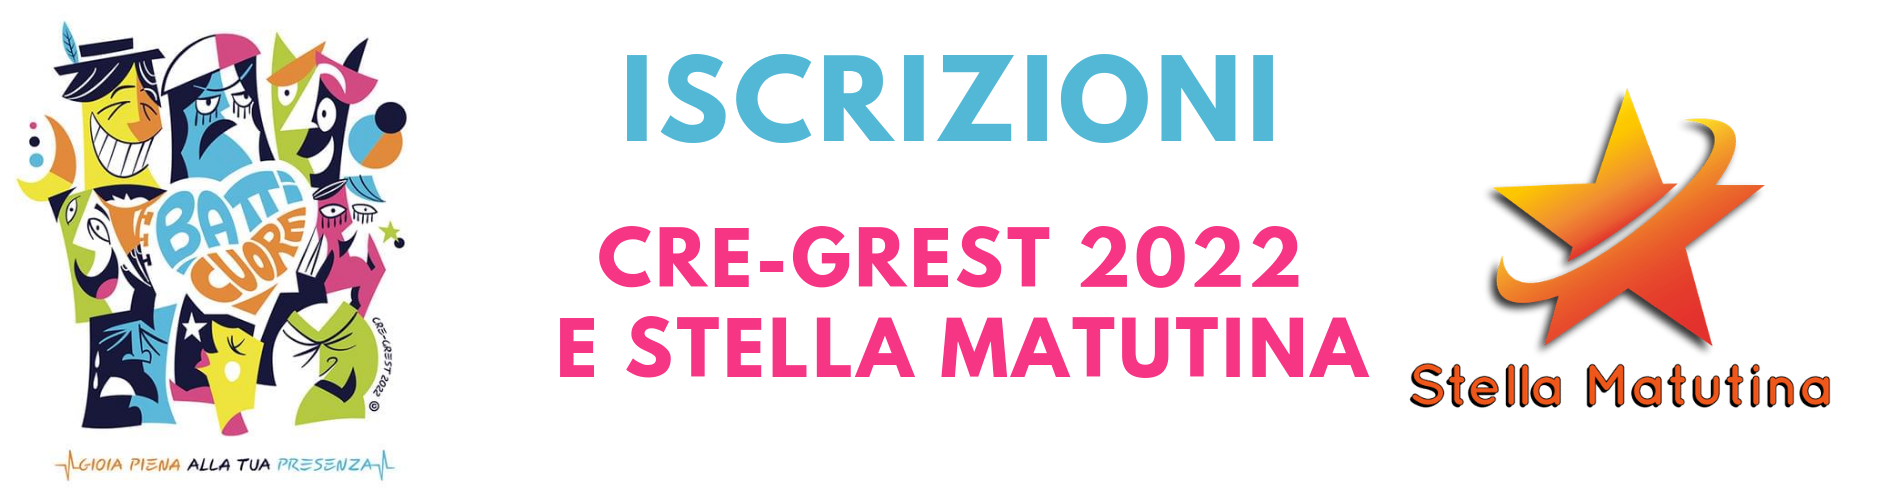 Iscrizioni Cre-grest 2022 e Stella Matutina